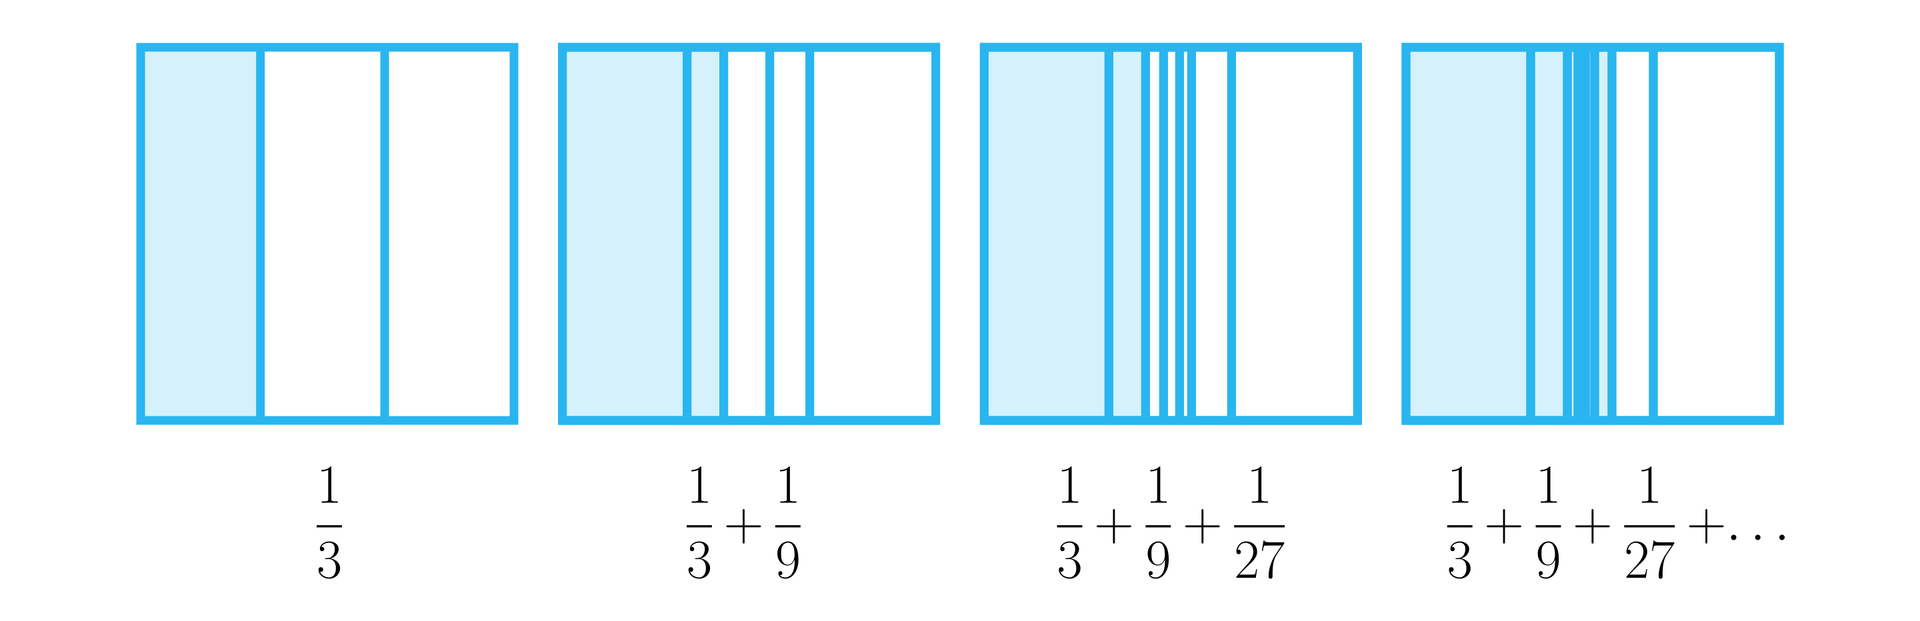 Ilustracja przedstawia cztery prostokąty podzielone na części. Pierwszy z nich podzielony jest na trzy części, z czego kolorem wyróżniono pierwszą i podpisany jako jedna trzecia, drugi podzielony jest na trzy części, z czego środkowa podzielona jest również na trzy części. Kolorem wyróżniono pierwsze dwie części. Prostokąt podpisano jedna trzecia dodać jedna dziewiąta. Trzeci prostokąt podzielono na trzy części. Środkową część podzielono na kolejne trzy, a środkową z nich znowu na trzy. Kolorem wyróżniono trzy różnej wielkości części i podpisano prostokąt jako: jedna trzecia dodać jedna dziewiąta dodać jedna dwudziesta siódma. Czwarty prostokąt podzielono podobnie jak poprzednie i podpisano: jedna trzecia dodać jedna dziewiąta dodać jedna dwudziesta siódma dodać wielokropek 